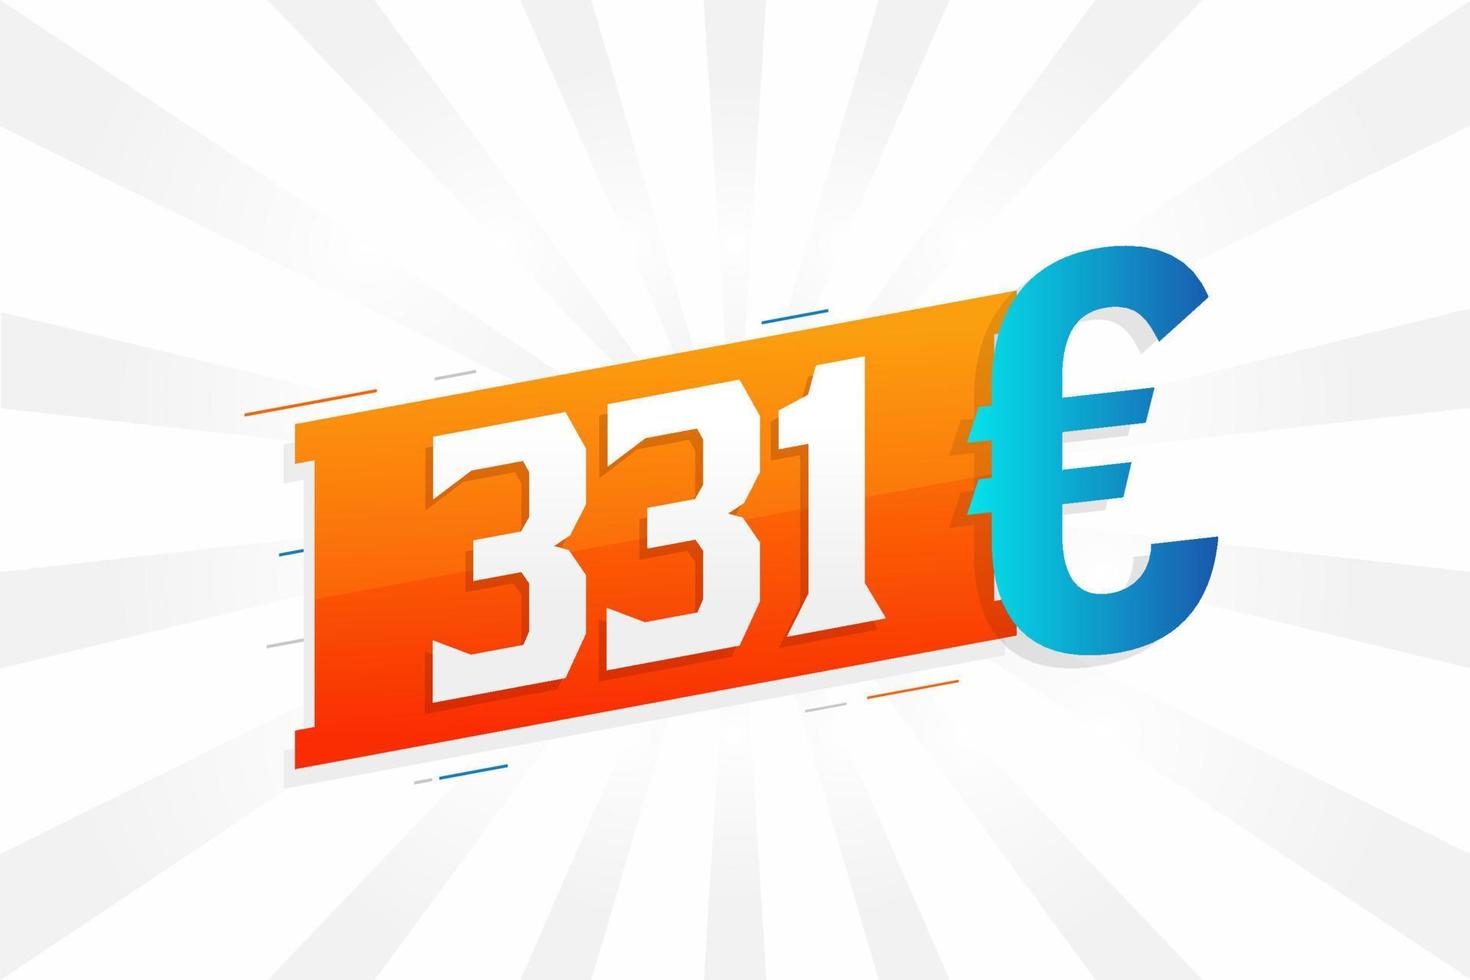 Símbolo de texto de vetor de moeda de 331 euros. vetor de estoque de dinheiro da união europeia de 331 euros